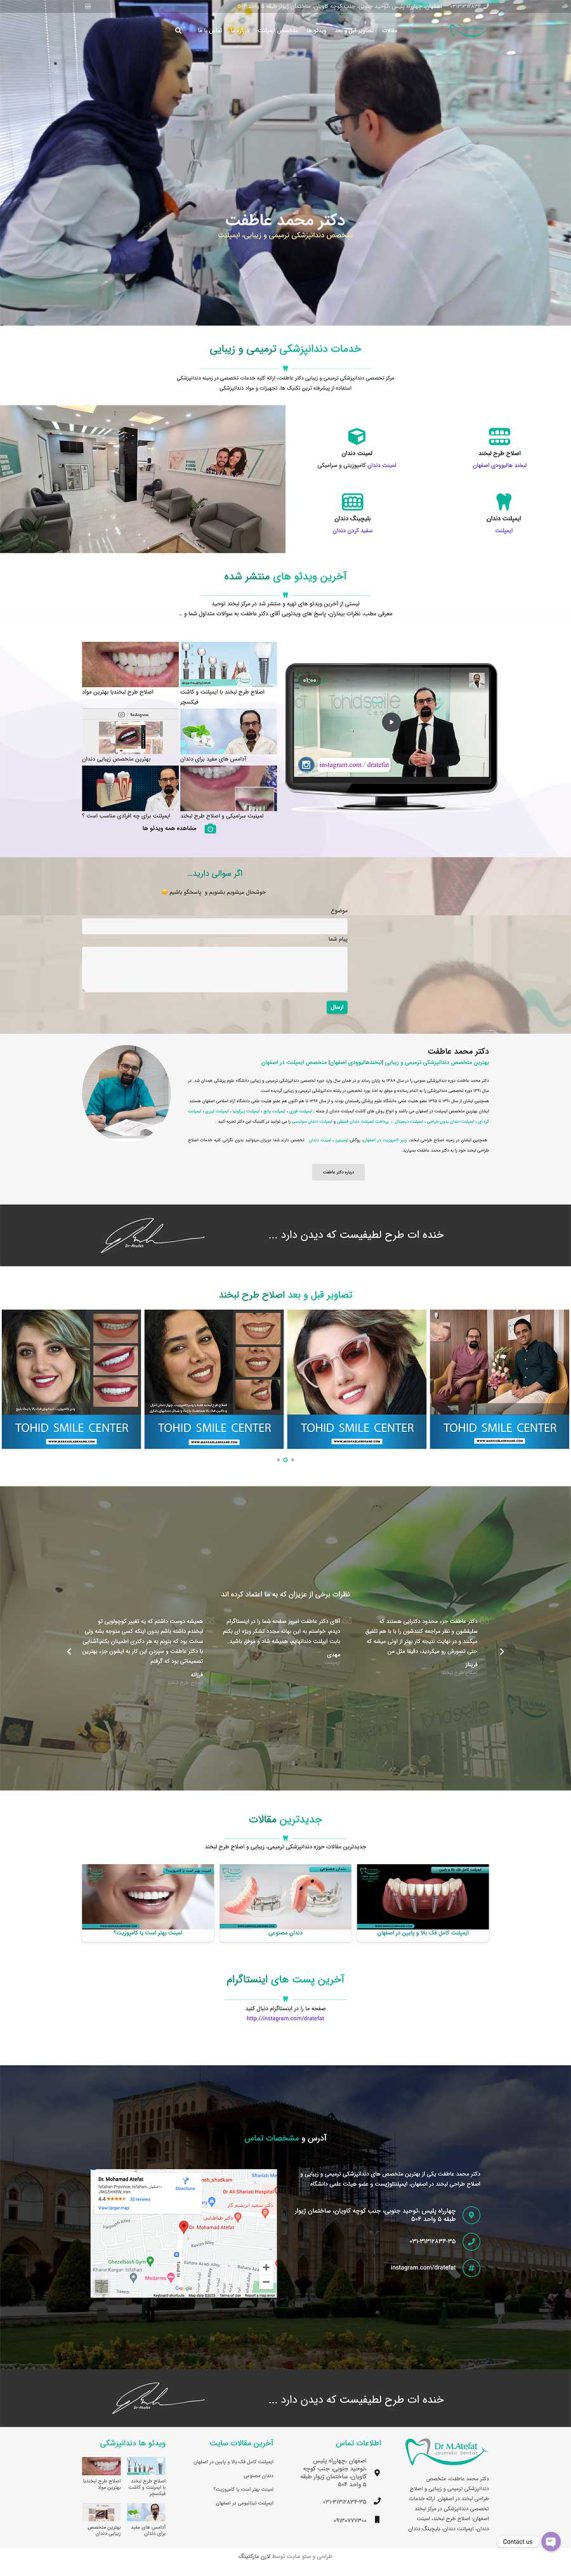 اسکرین سایت پزشکی طراخی شده - دکتر محمد عاطف توسط مجموعه لارن مارکتینگ